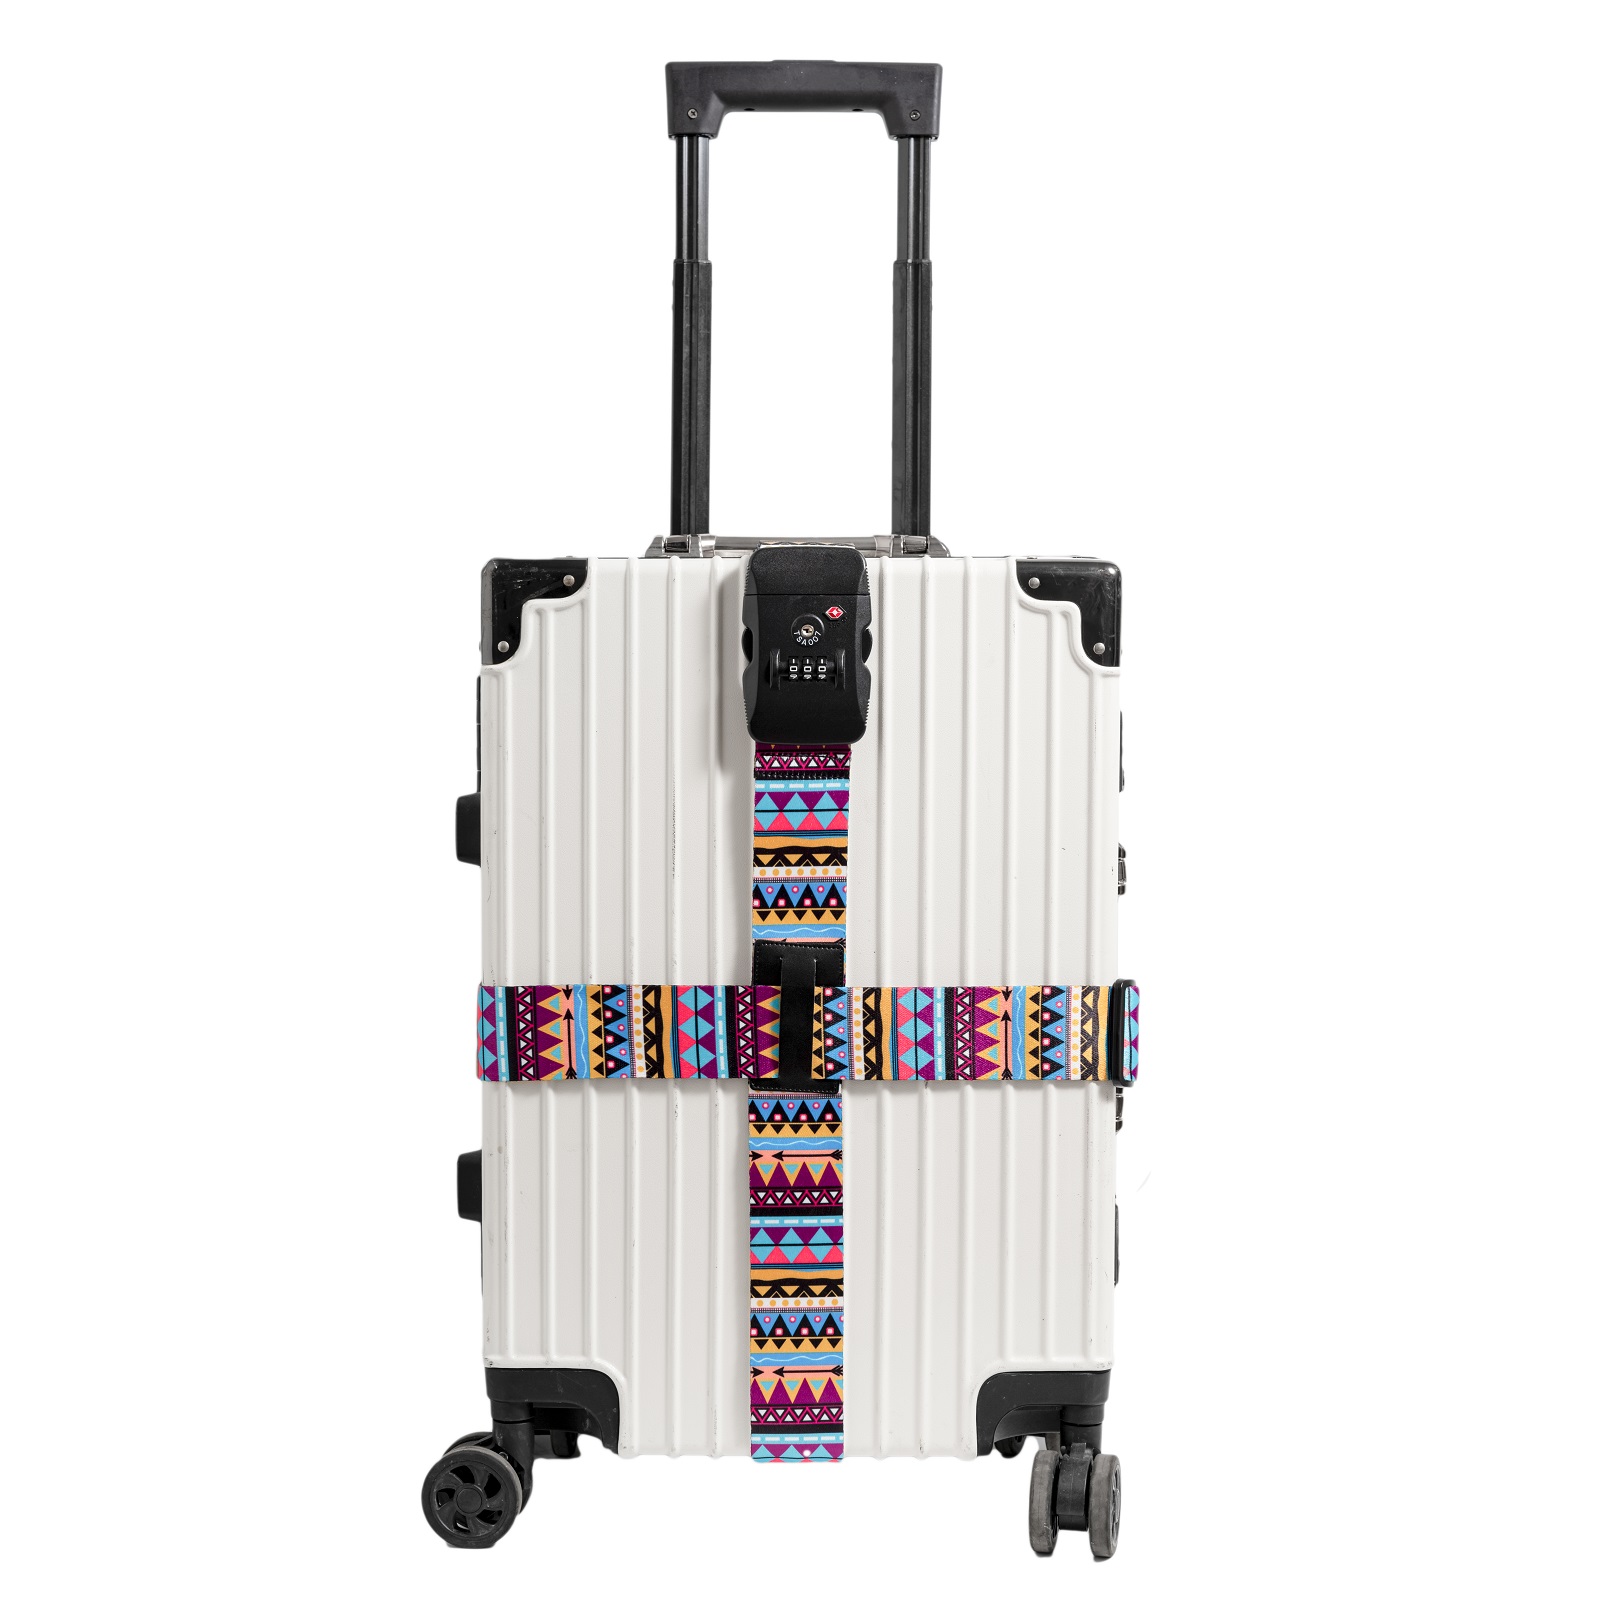 Dây đai vali thắt chữ thập chính hãng Go&Fly khóa TSA007 cao cấp loại dày 1.5 mm họa tiết thổ cẩm